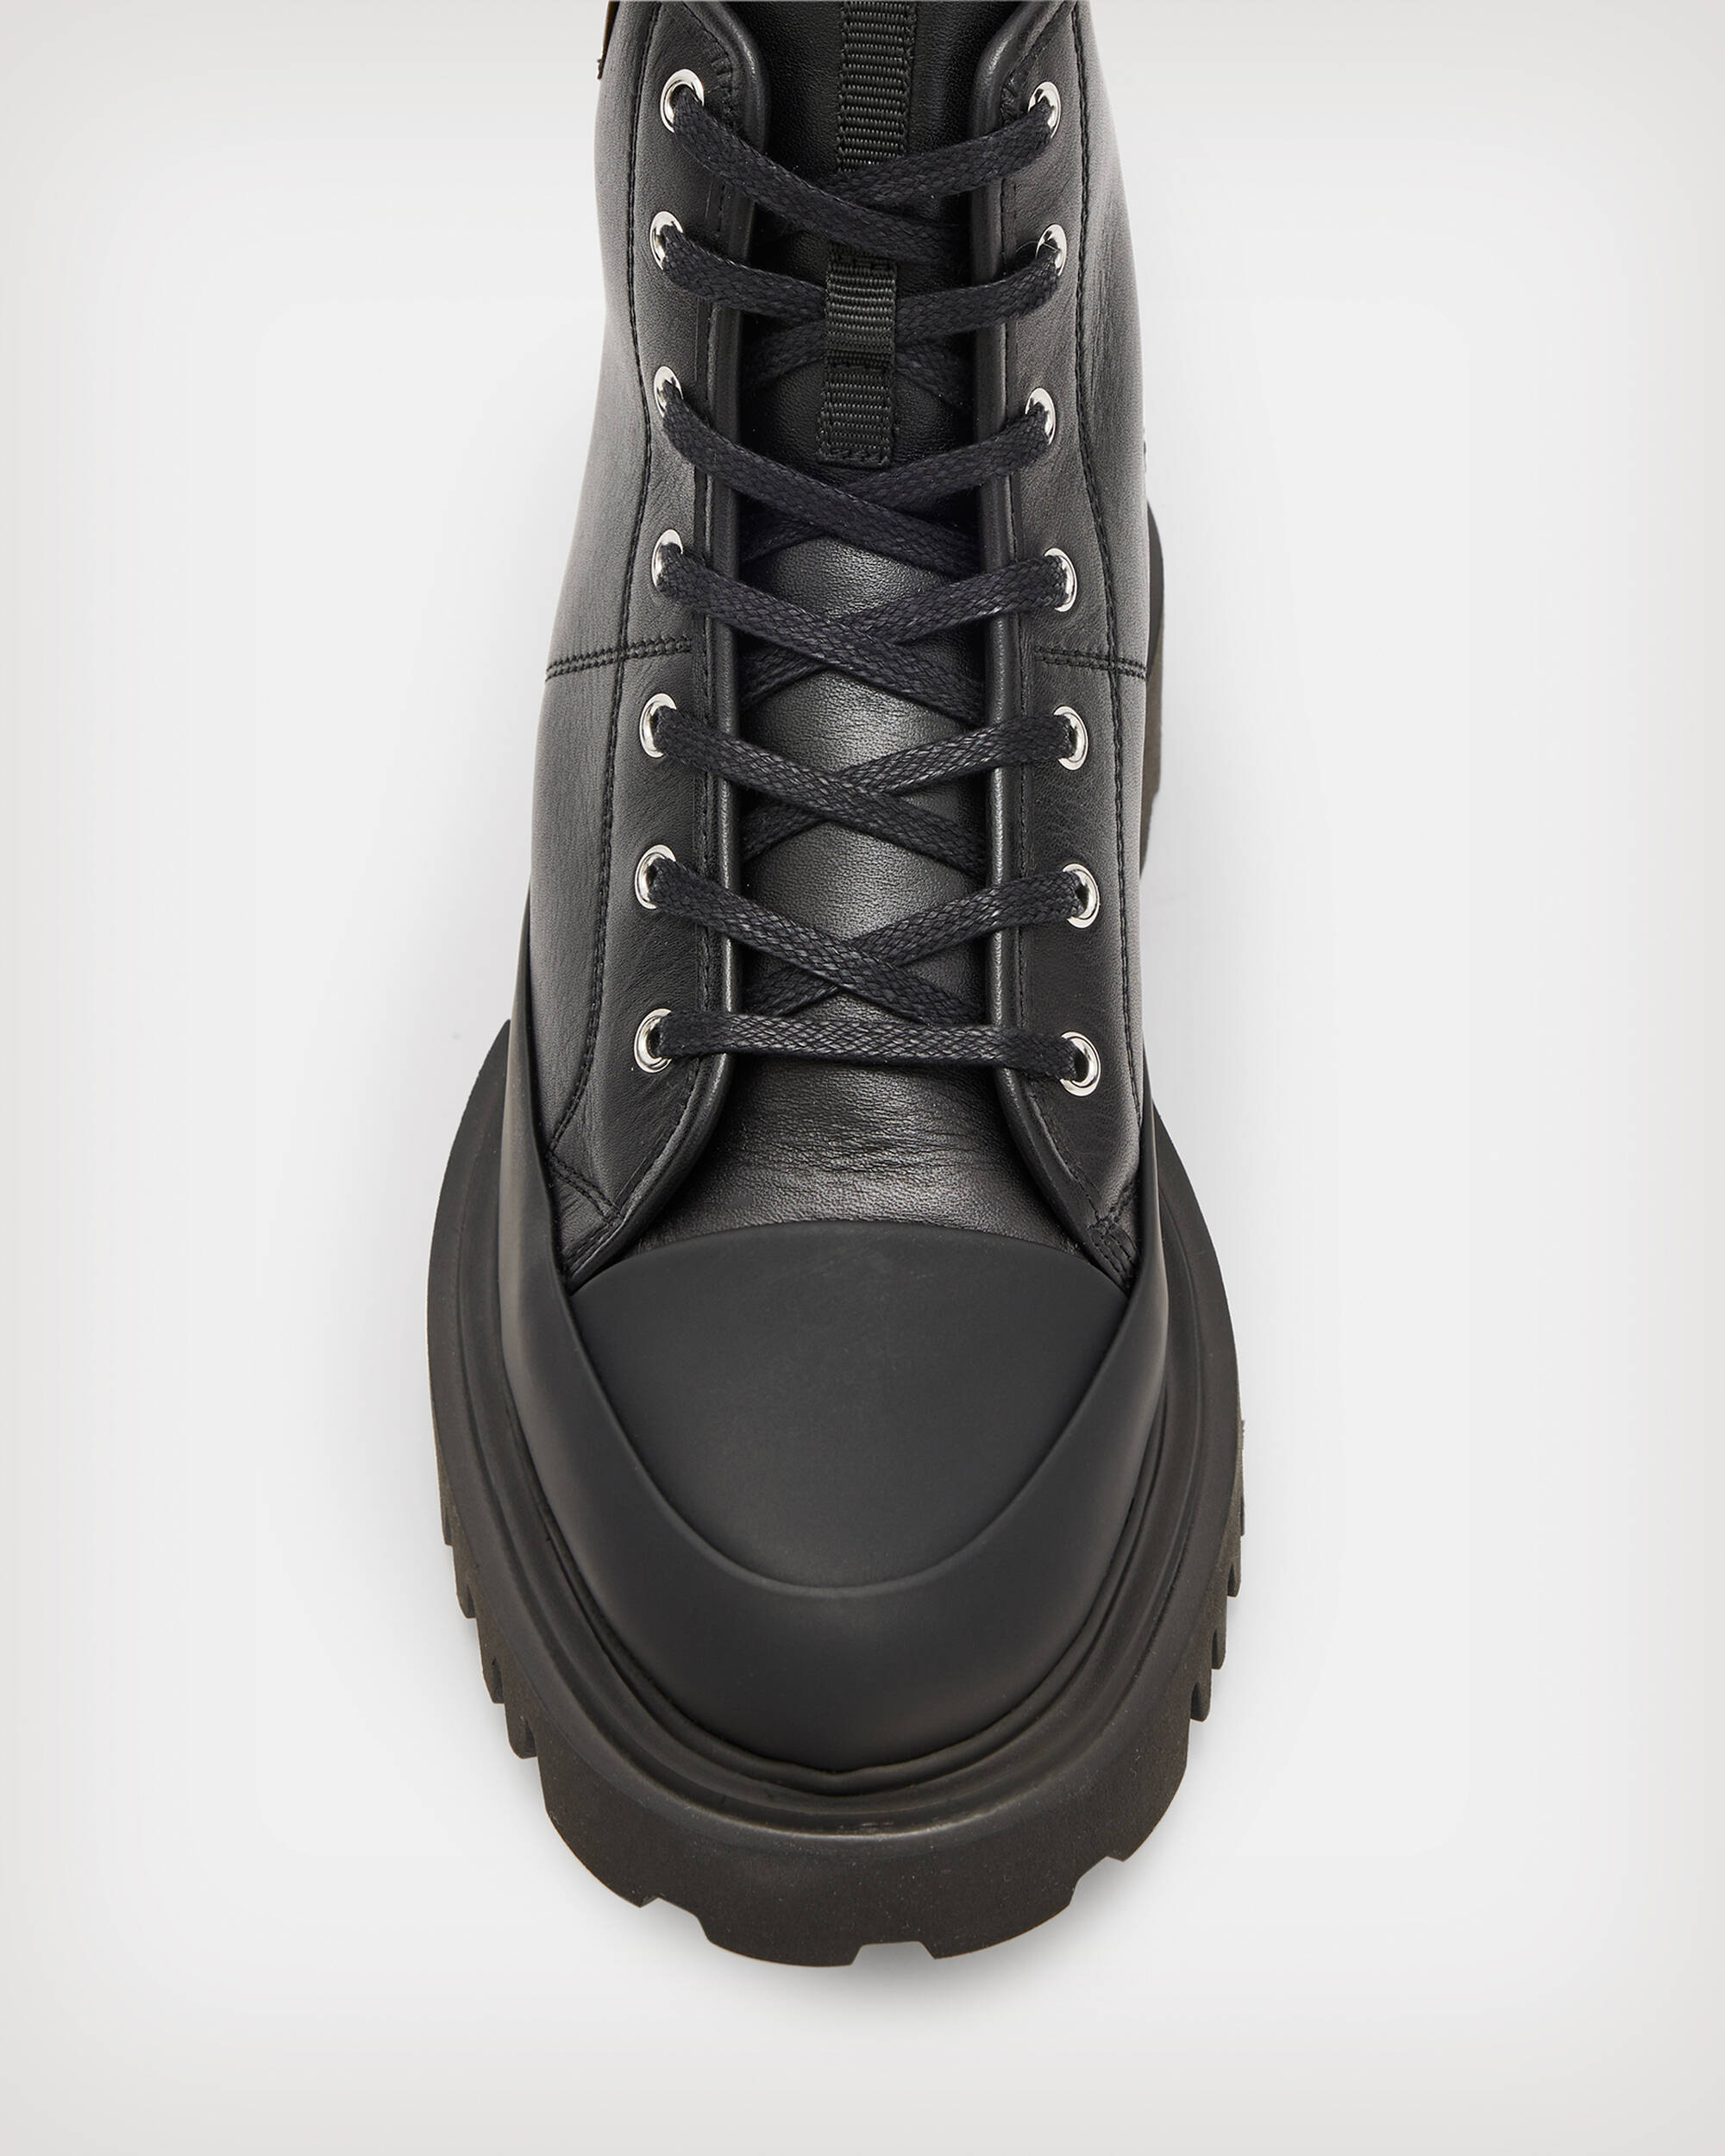 Myla Leather Combat Boots Black | ALLSAINTS US